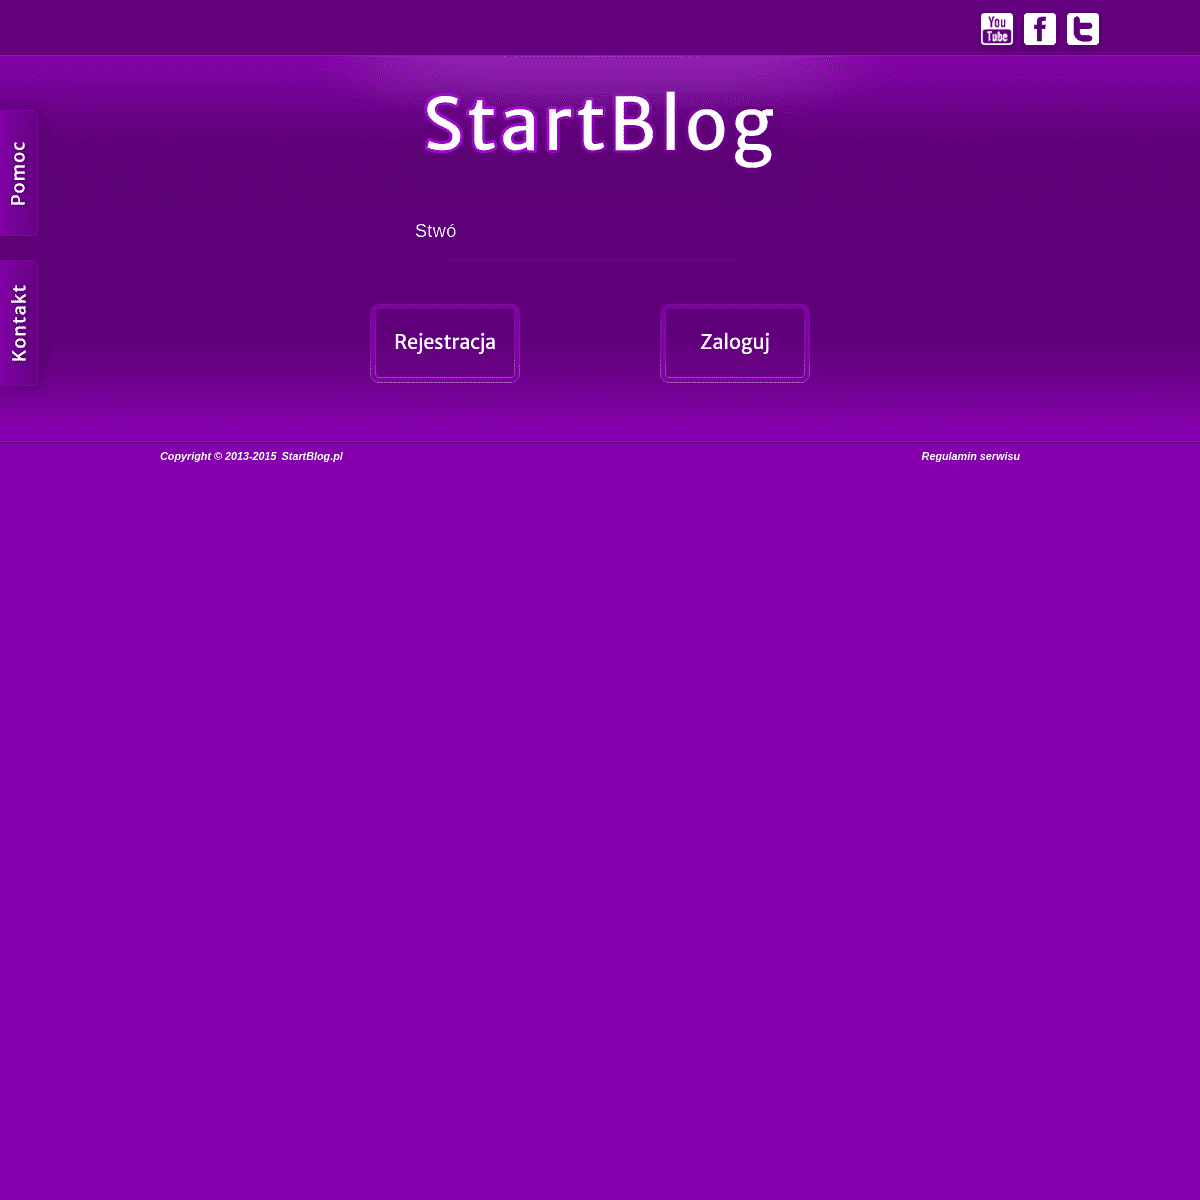 A complete backup of startblog.pl